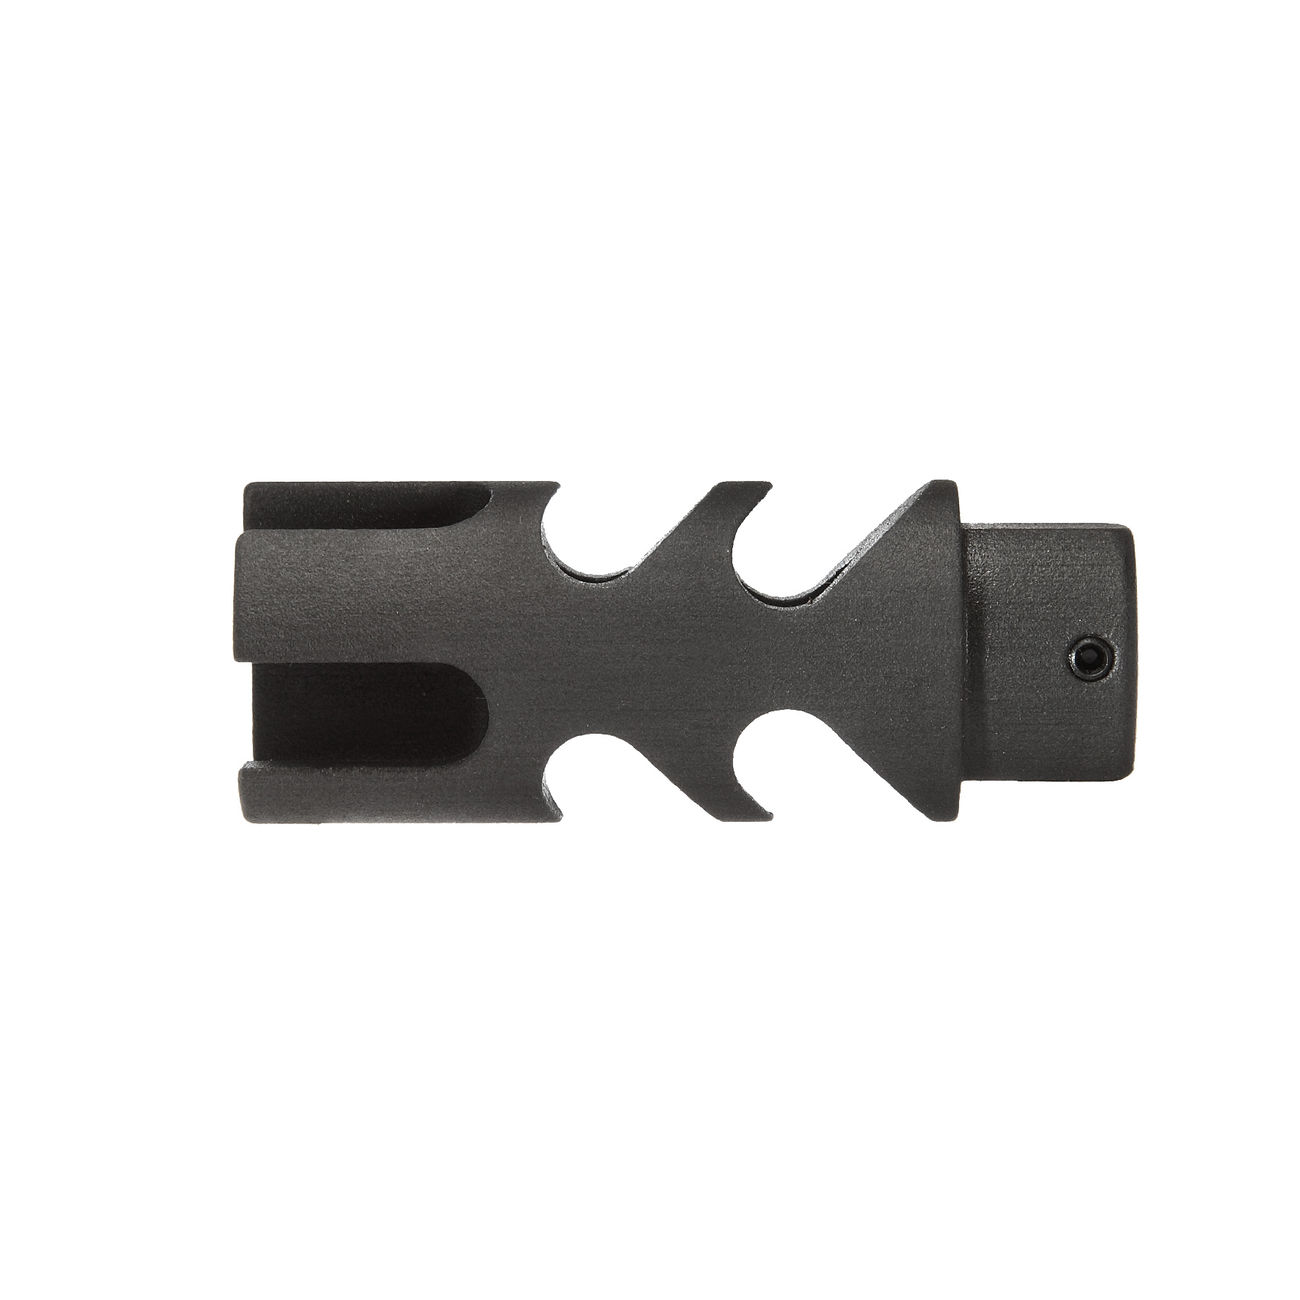 MadBull / Primary Weapons FSC 556 Flash-Hider schwarz 14mm+ Bild 2